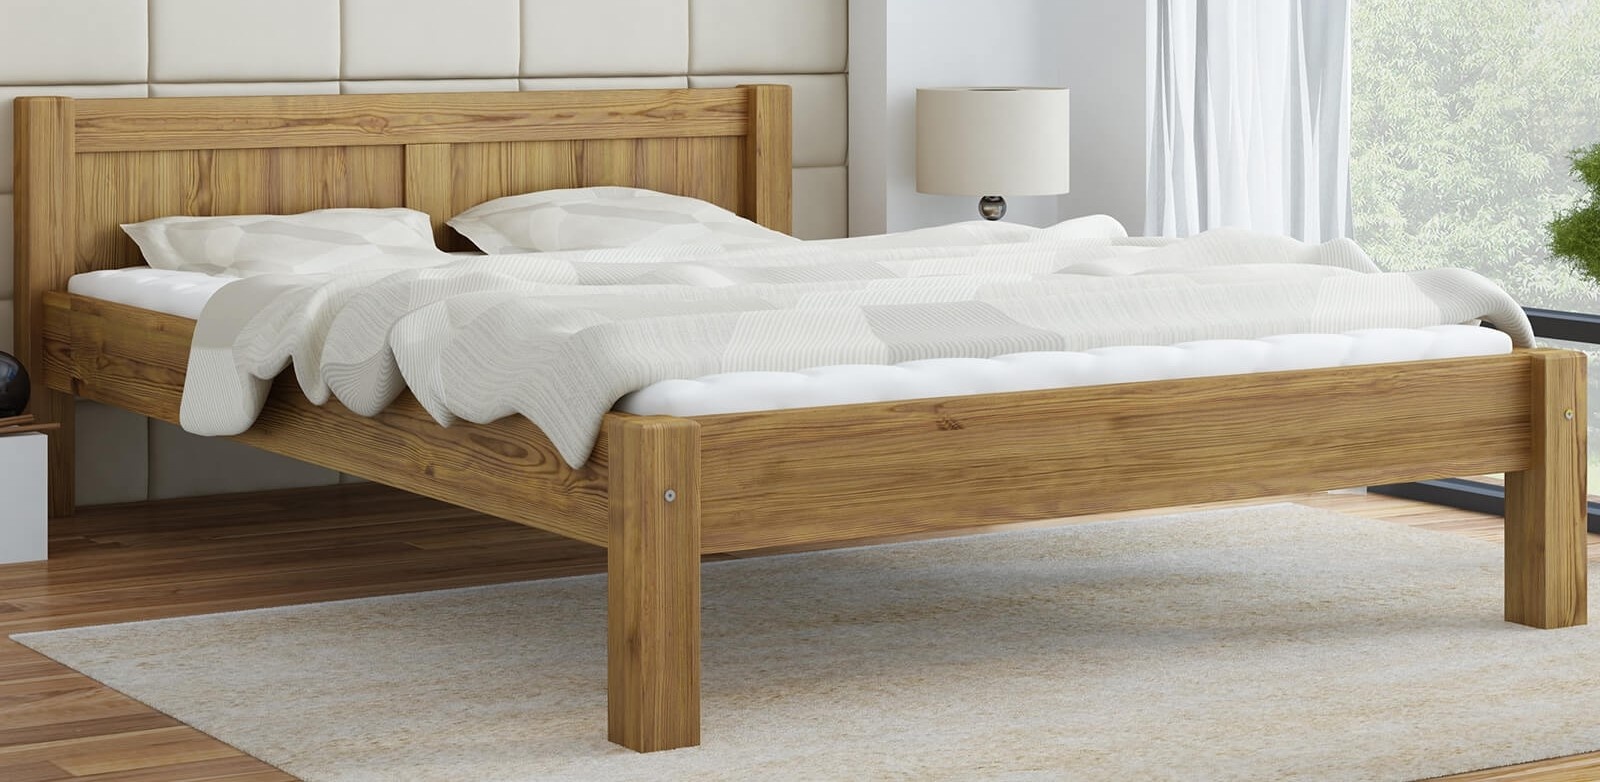 Производители кроватей 160х200 купить. Кровать Sallinge 160x200 натуральный. Кровать «Wooden Bed»-4 160*80см подростковая. Деревянная кровать 160х200.